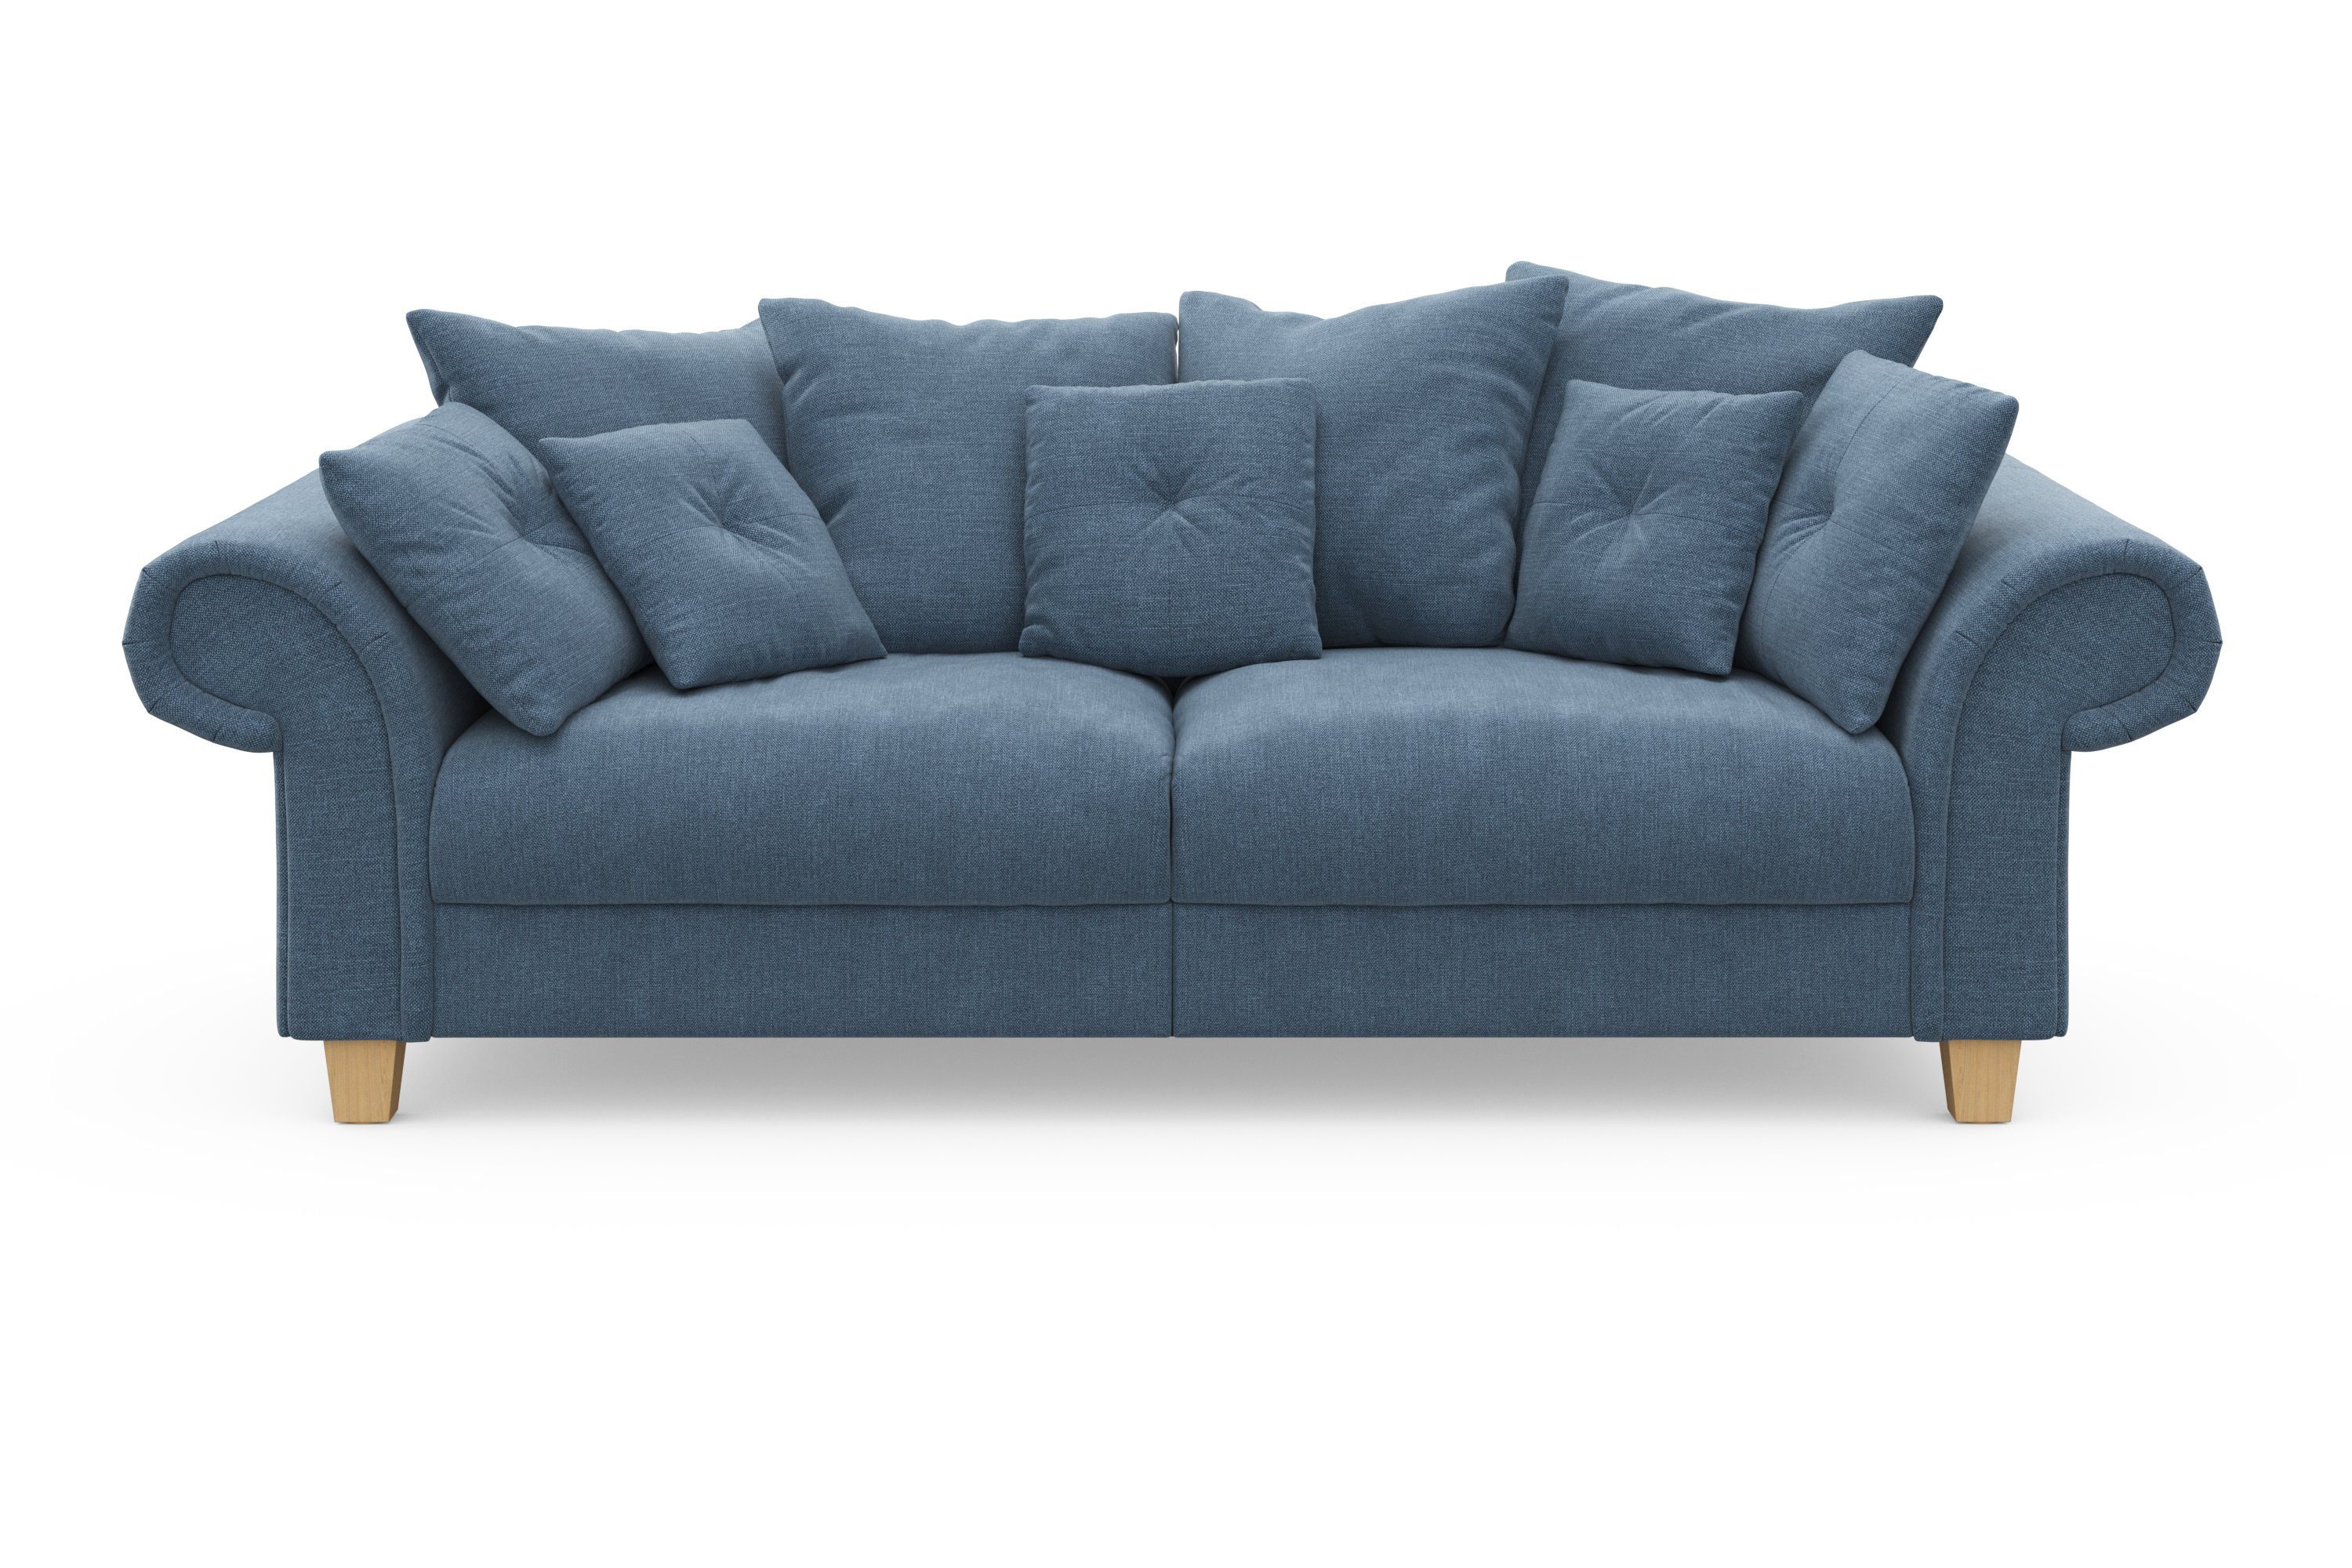 Big-Sofa Sitzkomfort viele kuschelige Megasofa, Queenie Home mit Teile, und Design, weichem zeitlosem Kissen affaire 2